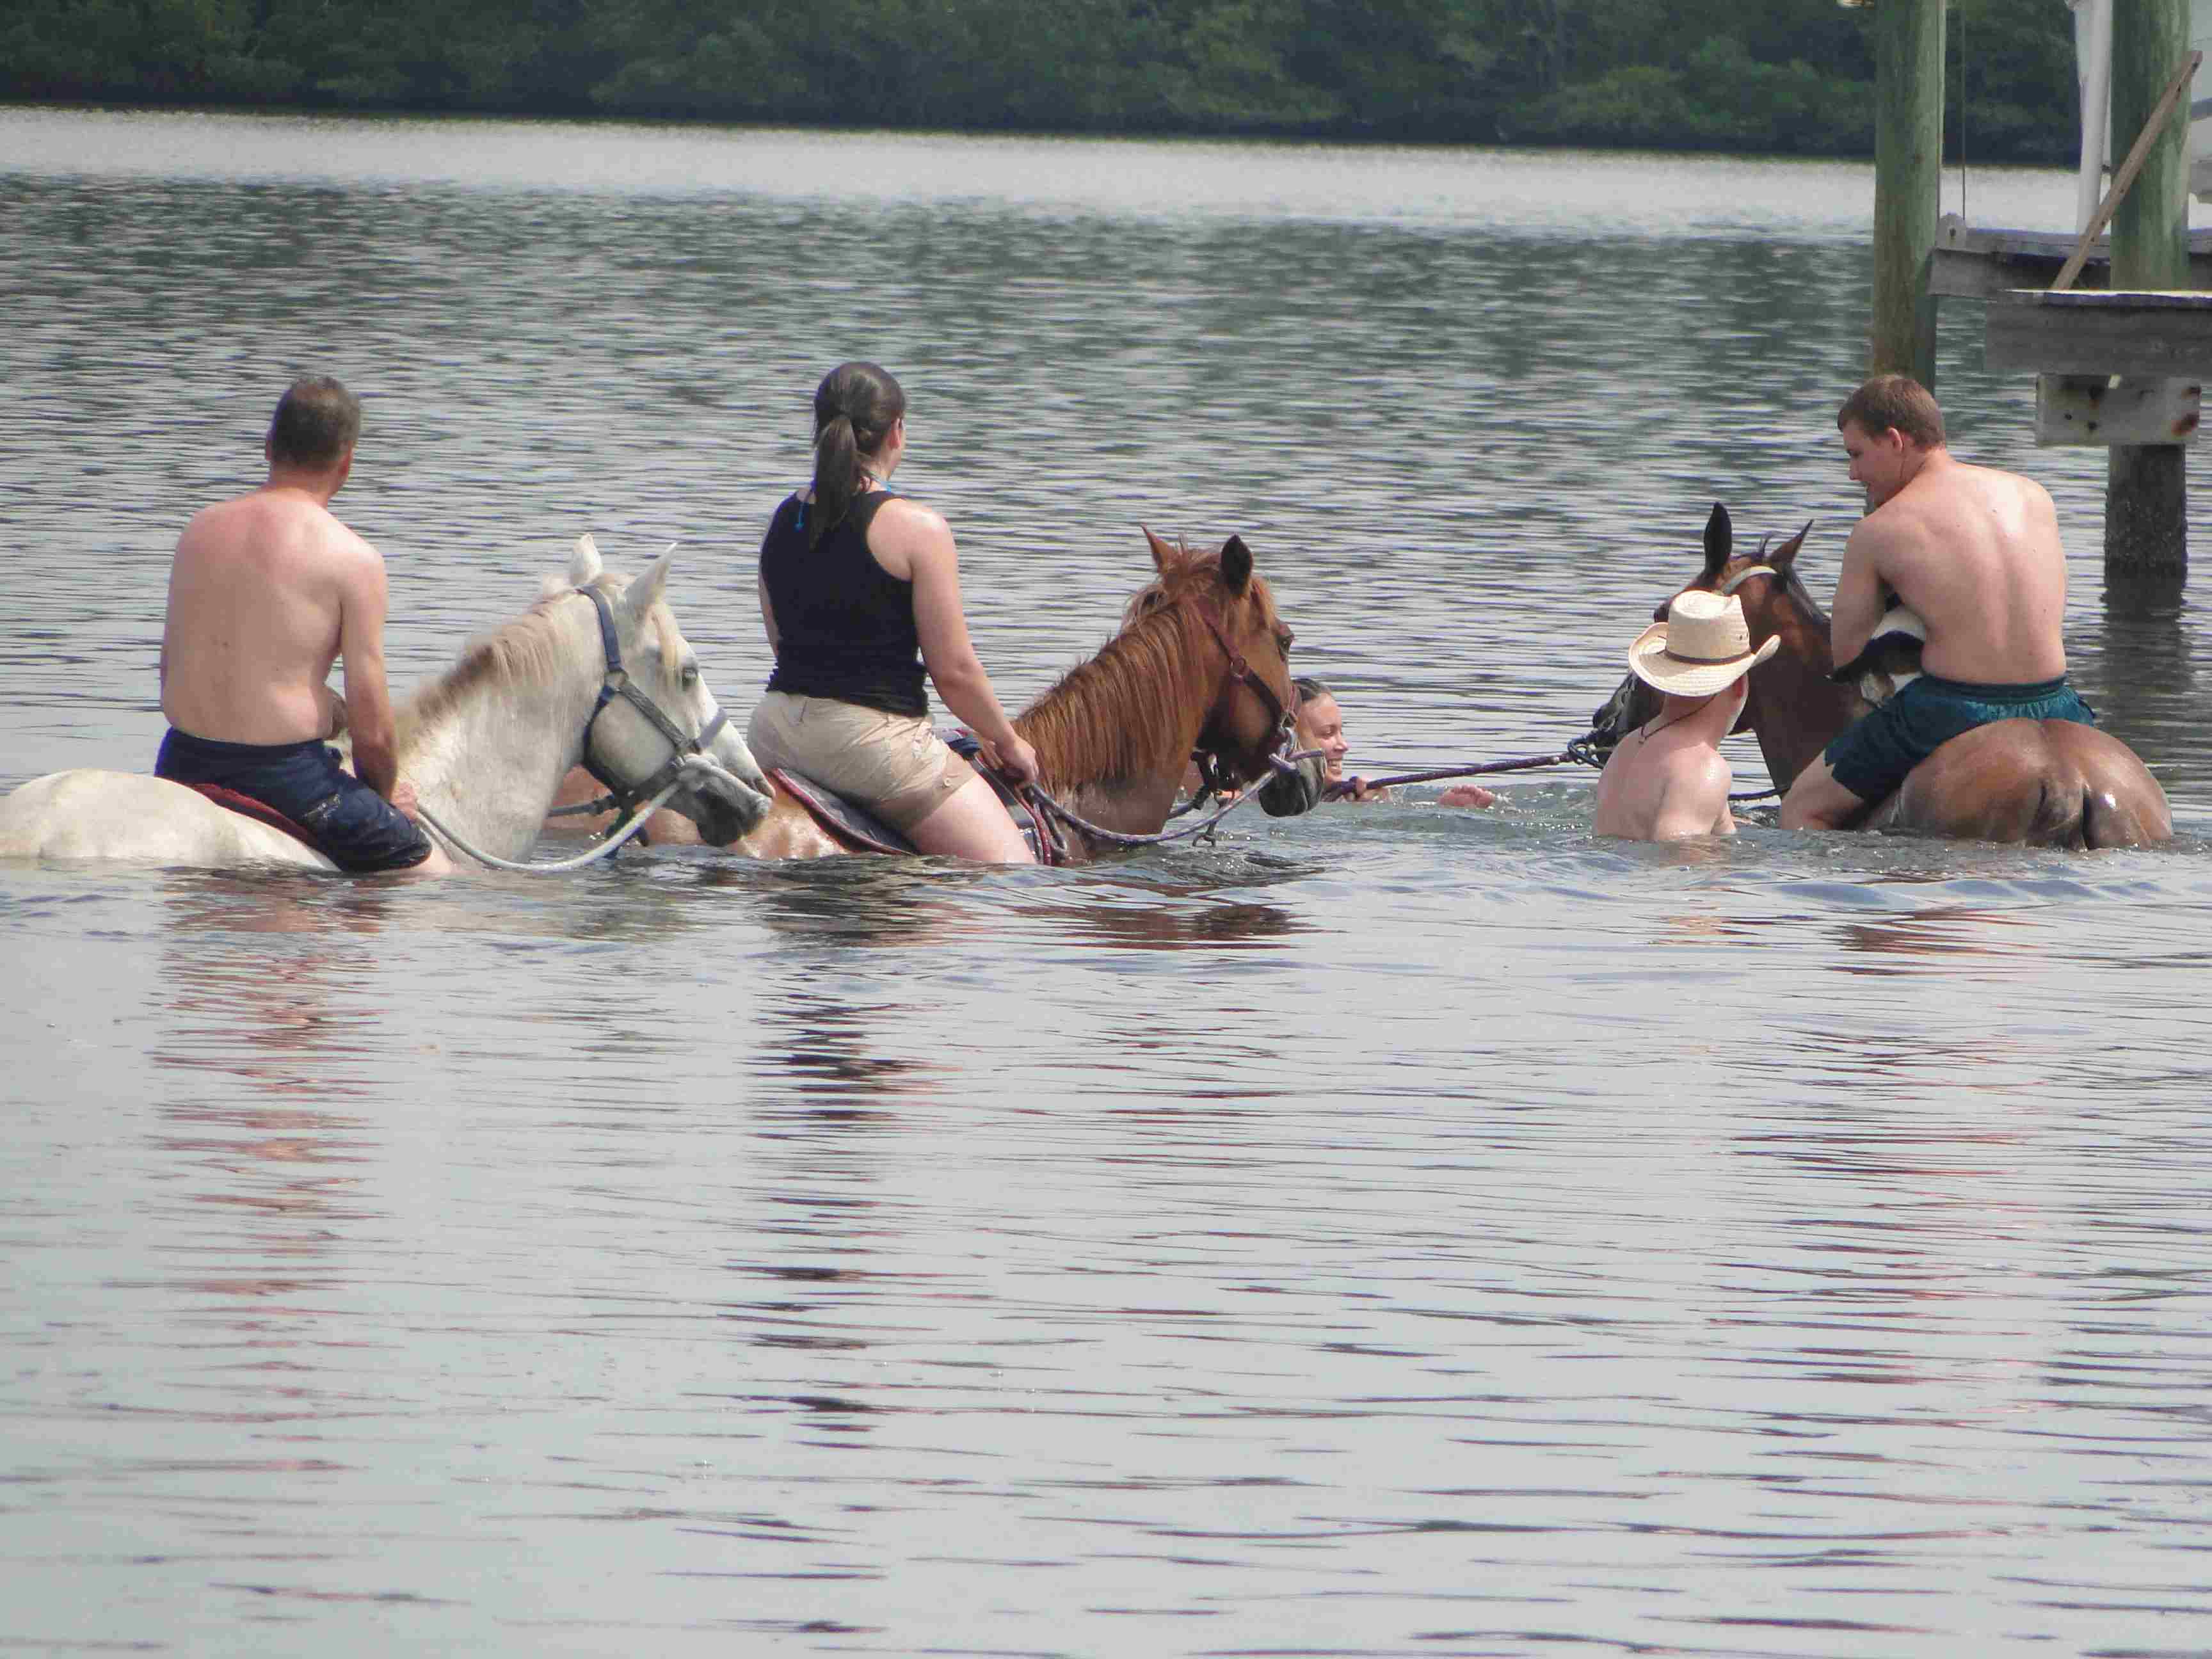 Op het paard gaat het het water in: dappere proberen te surfen. Foto: Bradenton Area